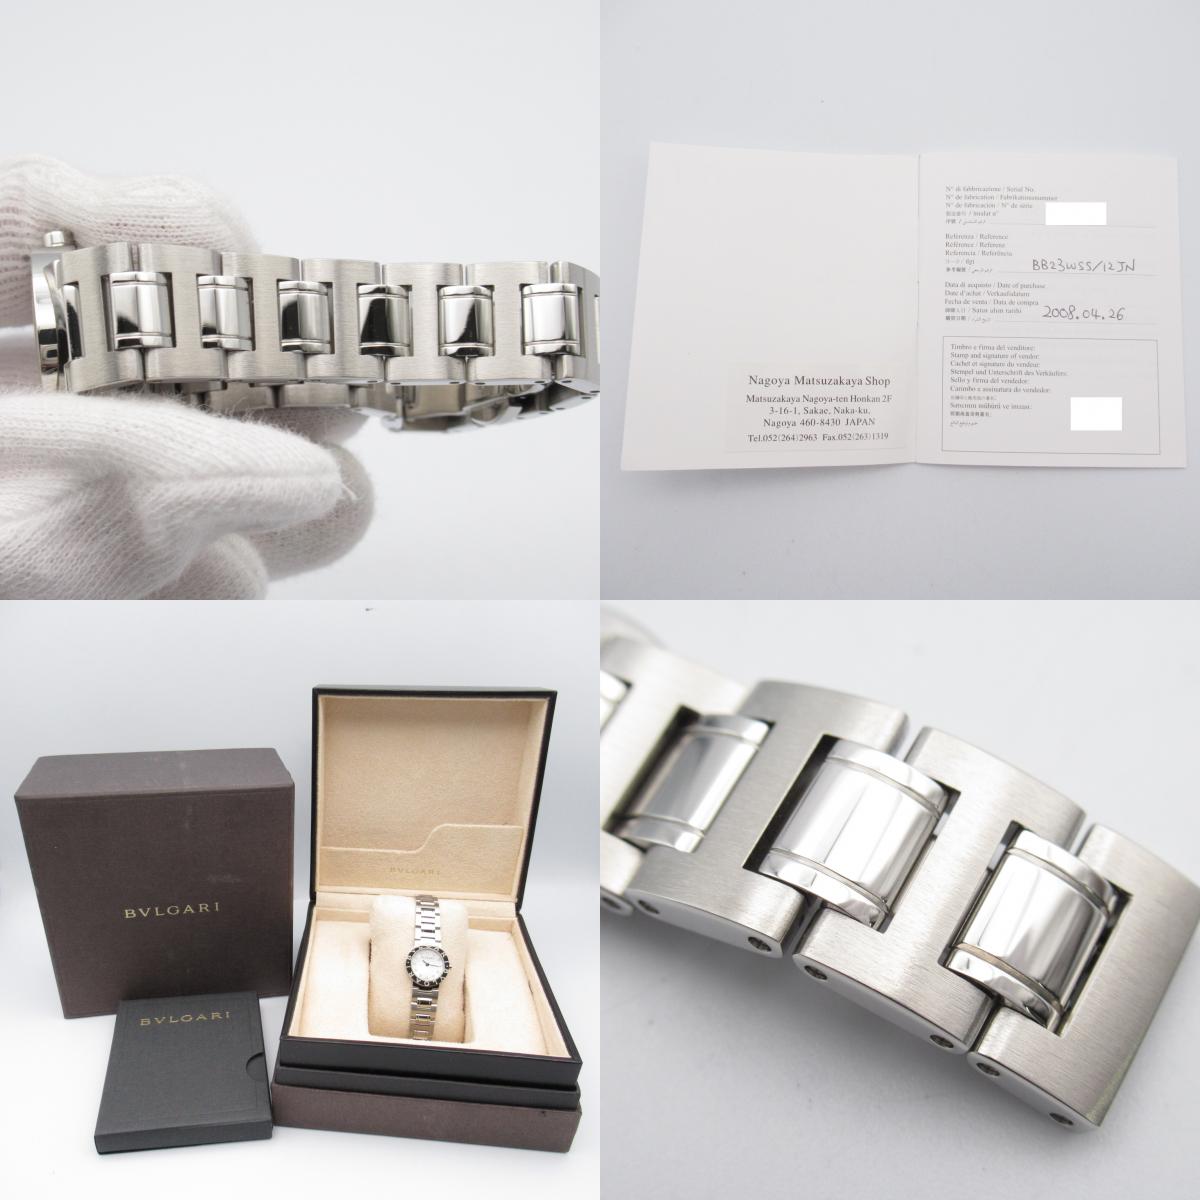 Bulgari BVLGARI n 12P Diamond  Watch Stainless Steel  White S BB23WSS/12JN